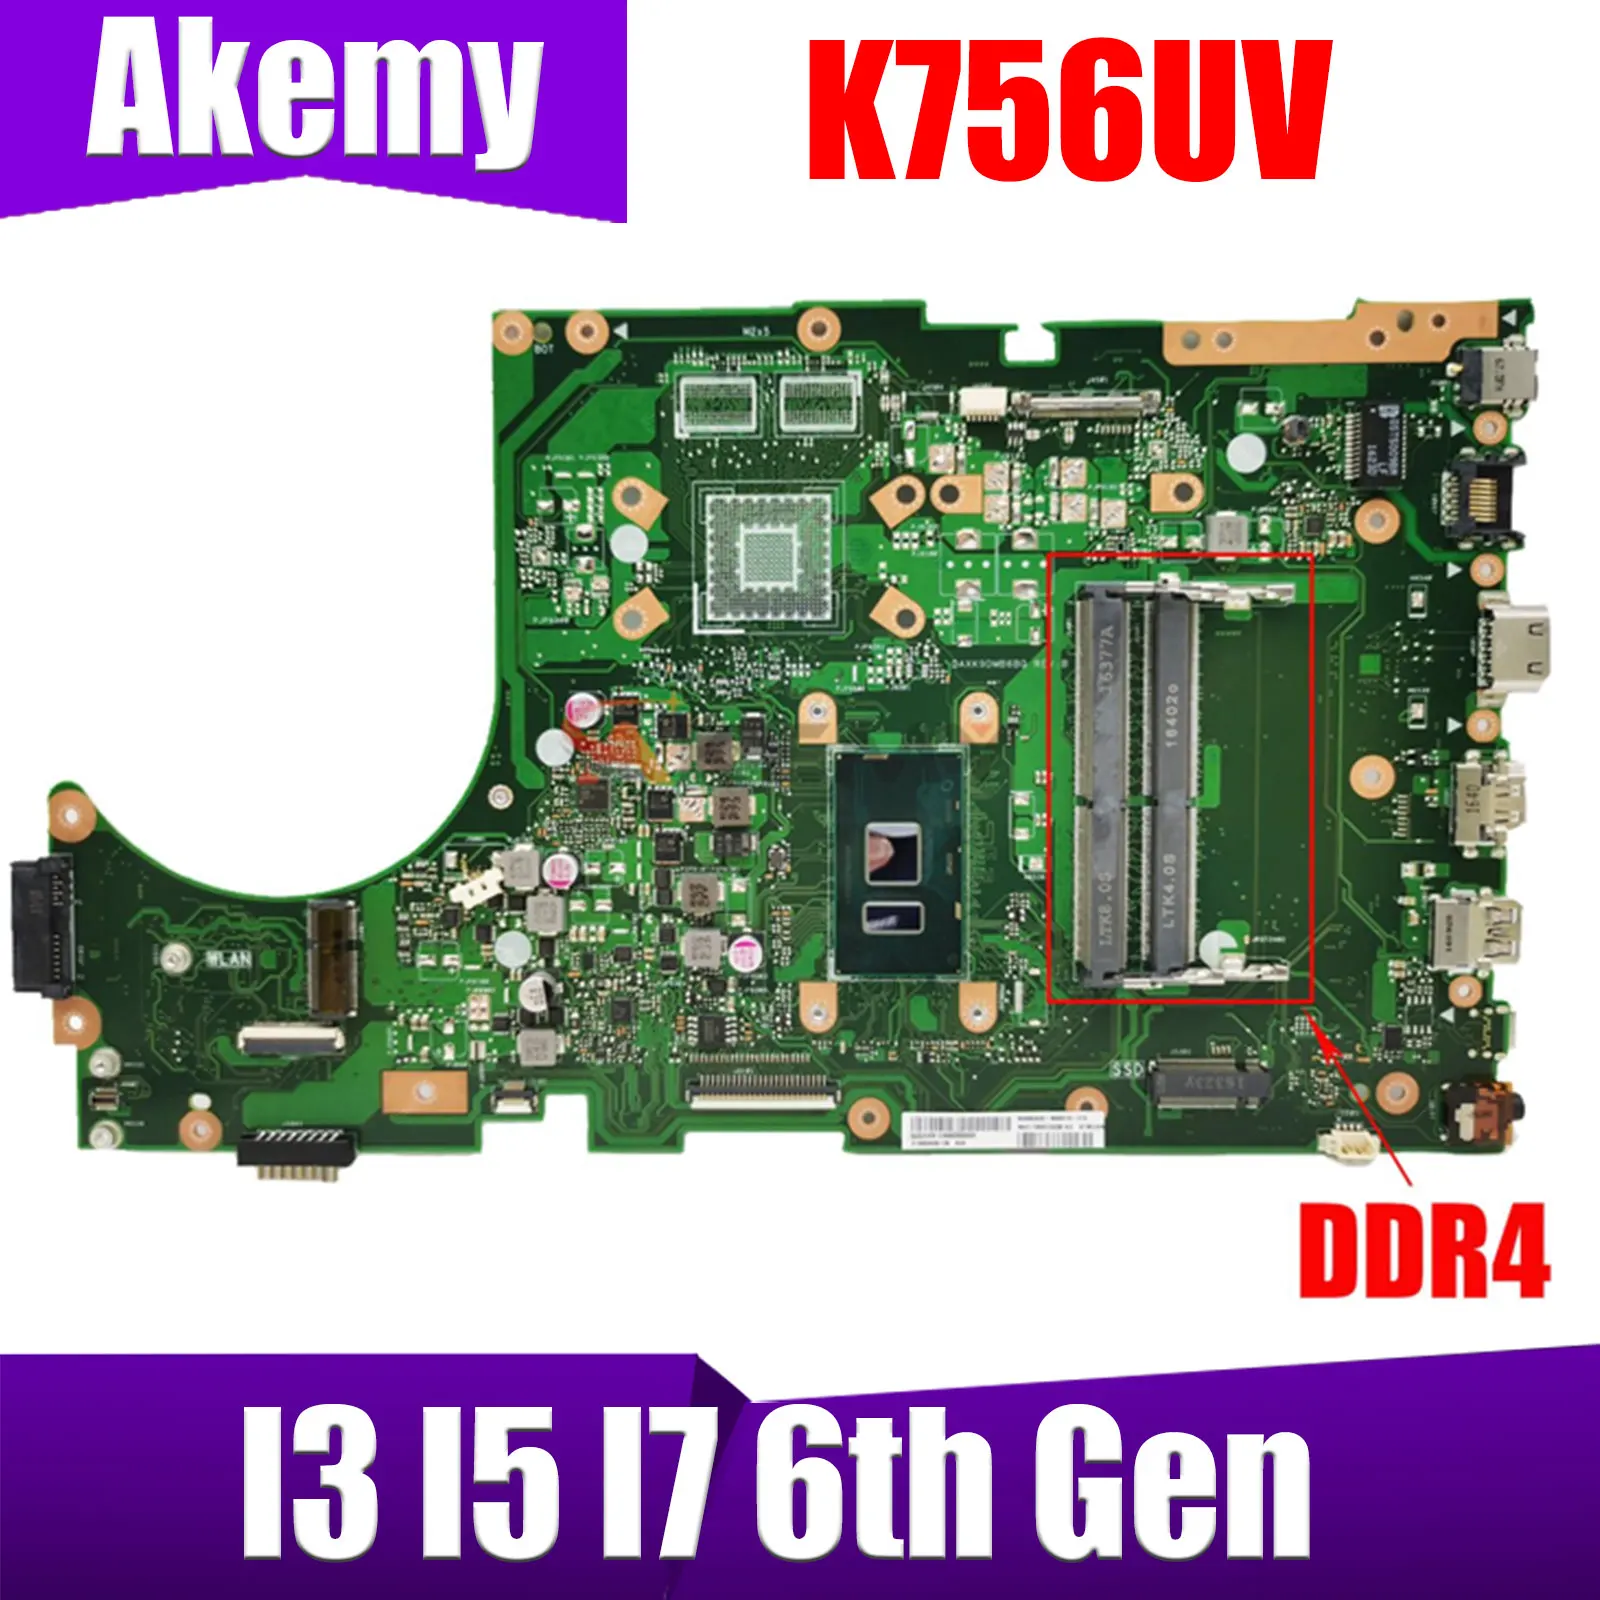 

K756UV Motherboard For Asus X756UV X756UAK X756UA X756UJ X756UXM X756UQK X756UW W/I3- I5-I7-6th CPU DDR4/DDR3 100% Test OK